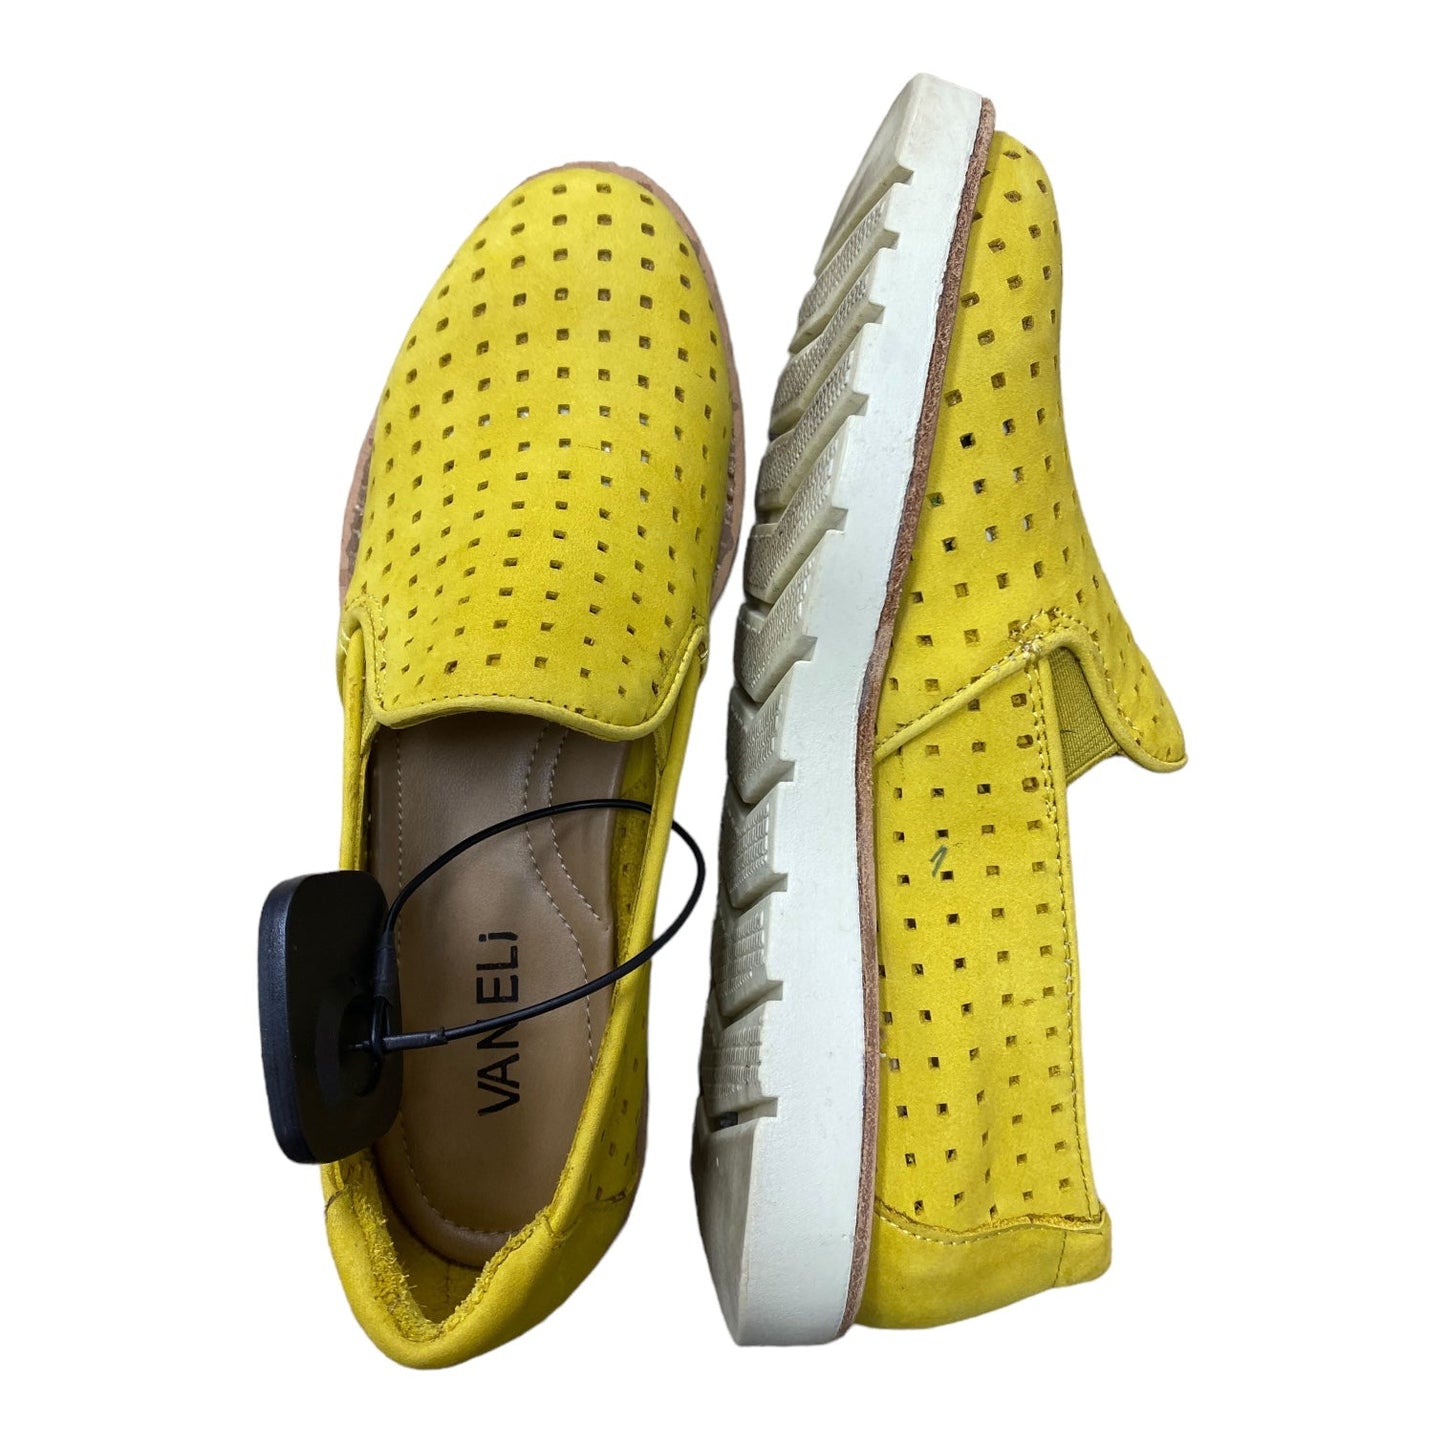 Yellow Shoes Flats Vaneli, Size 5